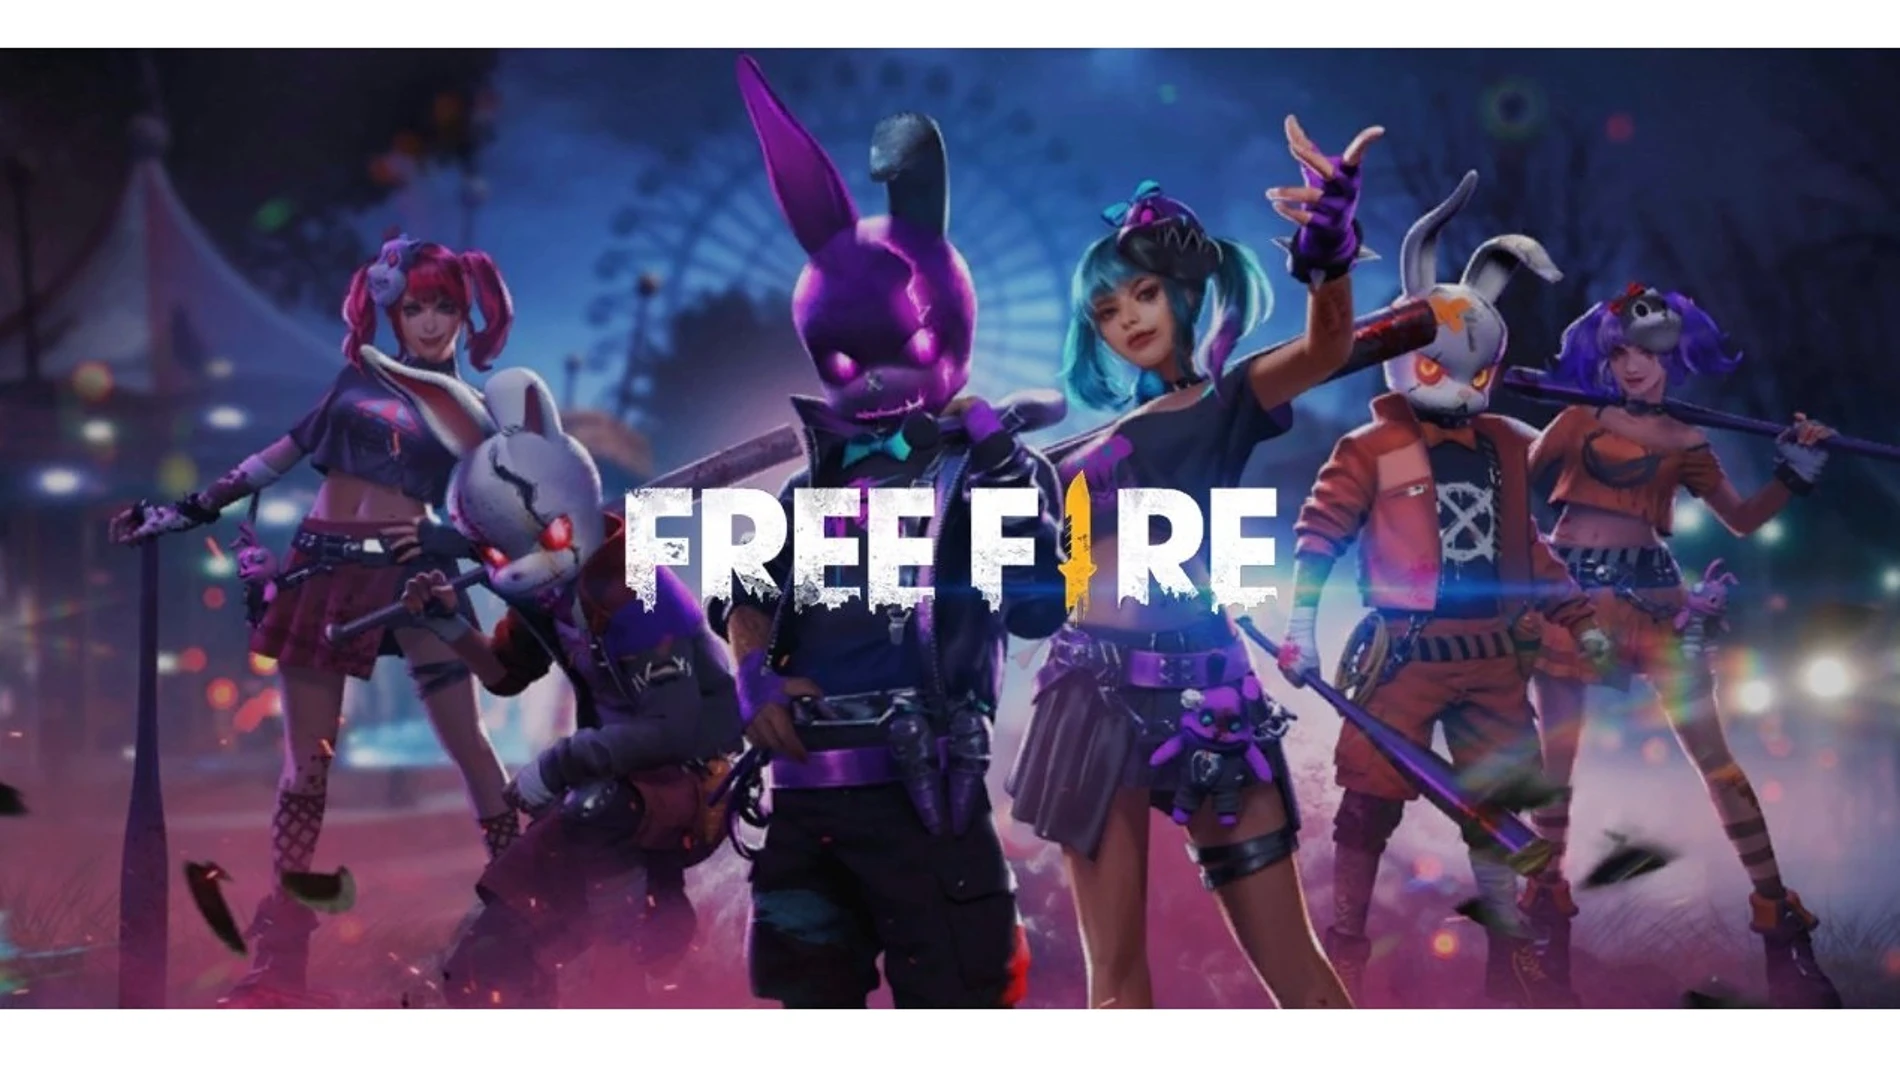 Free Fire se convierte en el juego más descargado de 2019